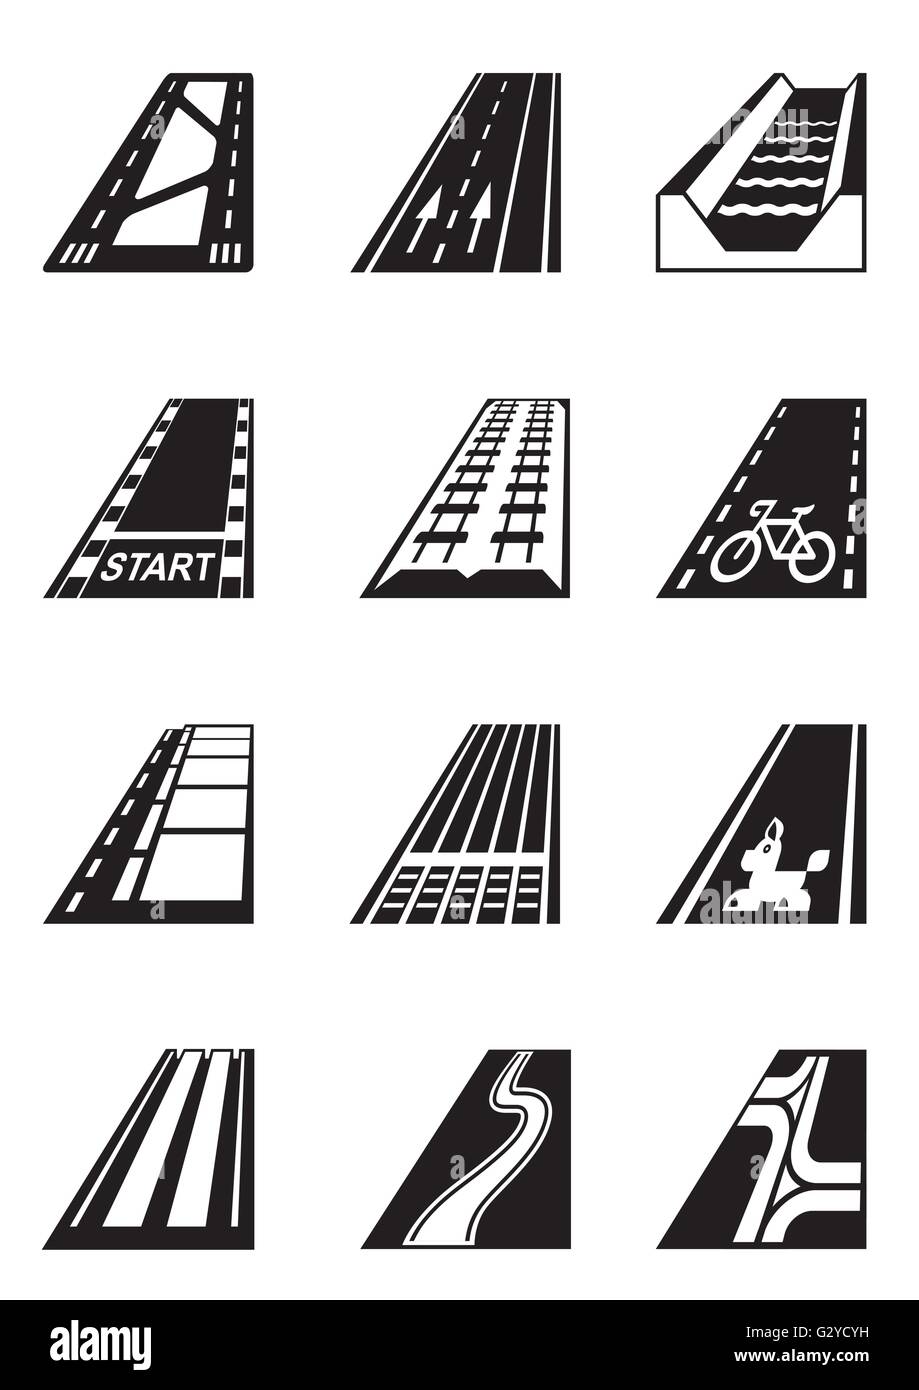 Verschiedene Arten von Straßen - Vektor-illustration Stock Vektor